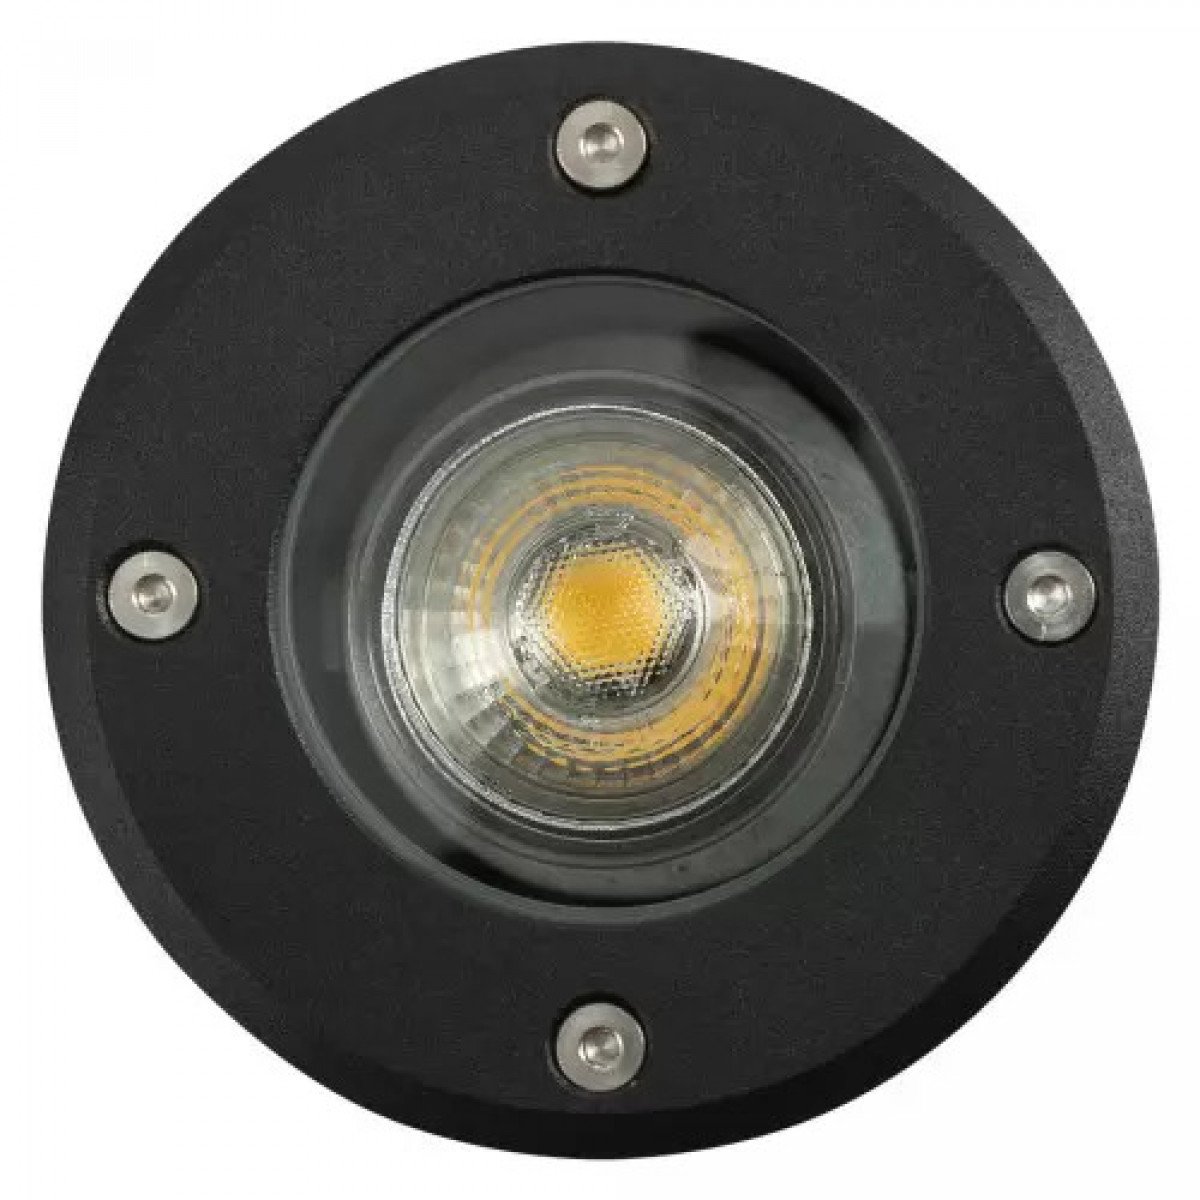 Bodenspot LED Schwarz GU10 Rund, Solasto, Dasar, Big Plot, Trail-Light, Adjust, Rocci